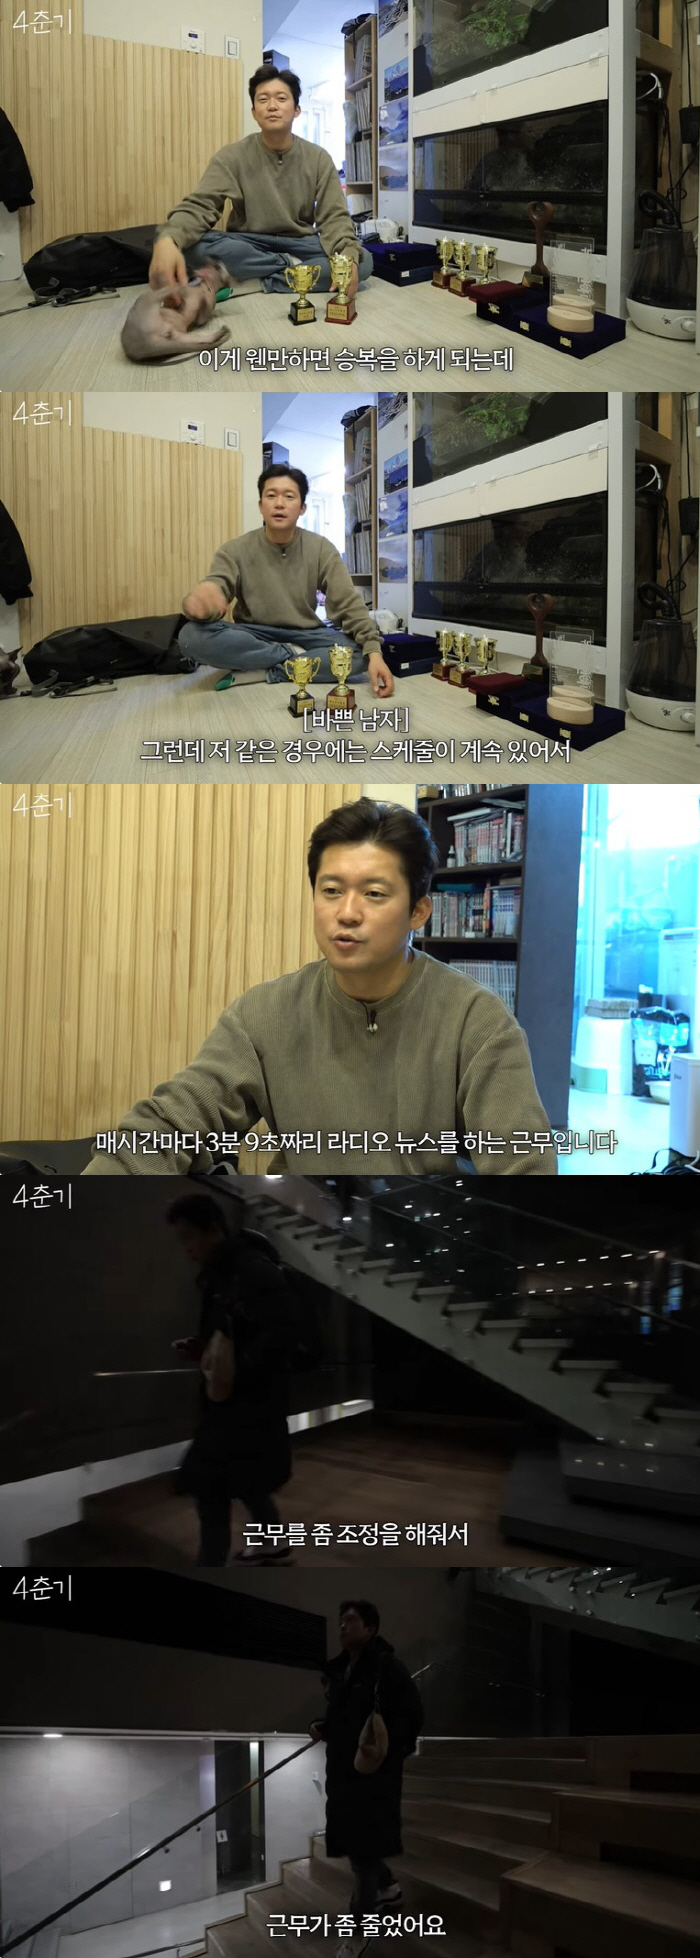 김대호 프리 막기 위한 MBC의 노력 "아나운서국, 근무 조정해줘"